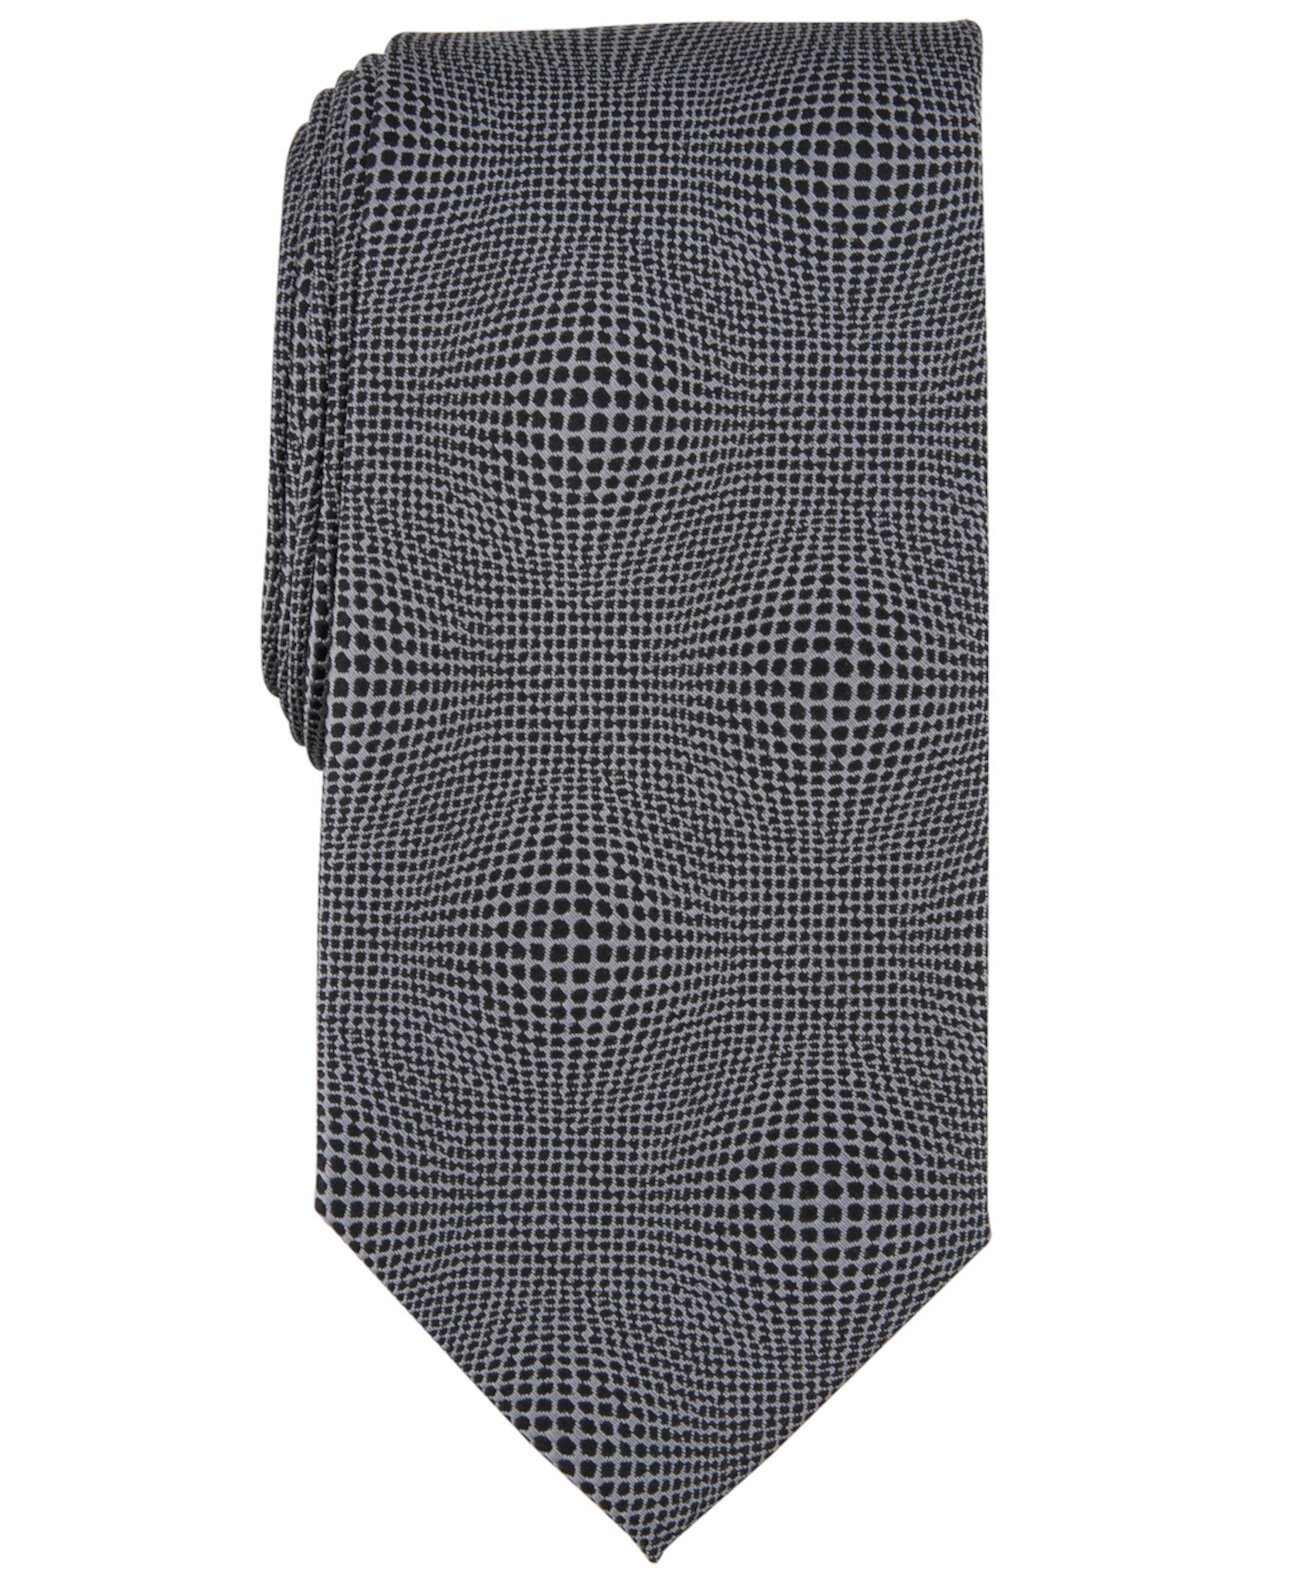 Мужской галстук Barden с геопринтом Perry Ellis